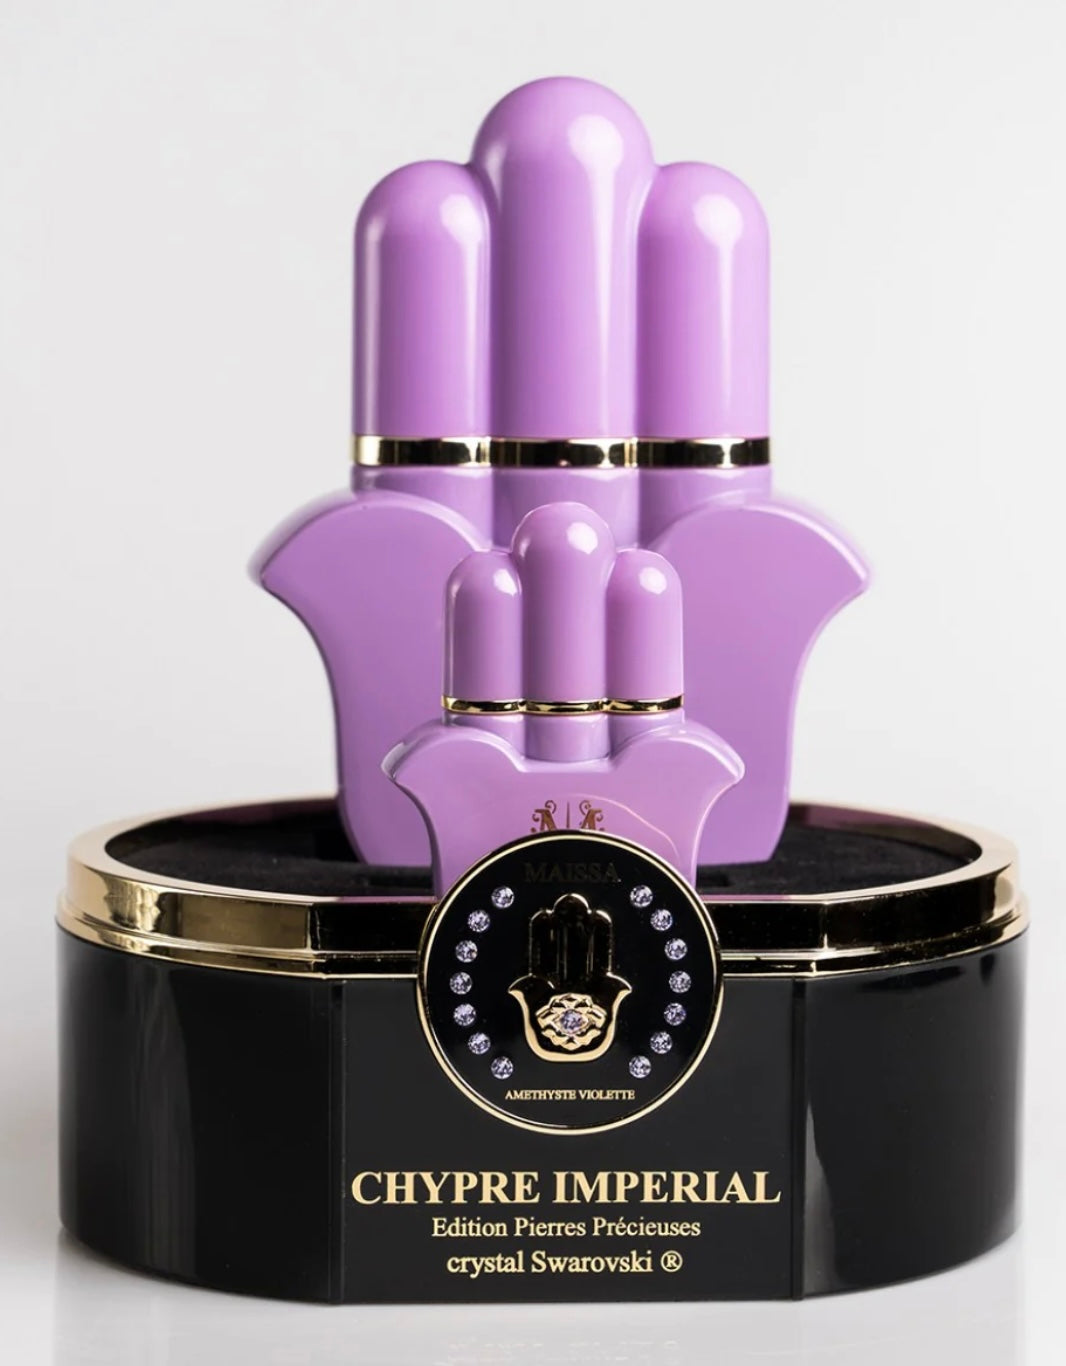 MAISSA PARIS Chypre Impérial perfume set